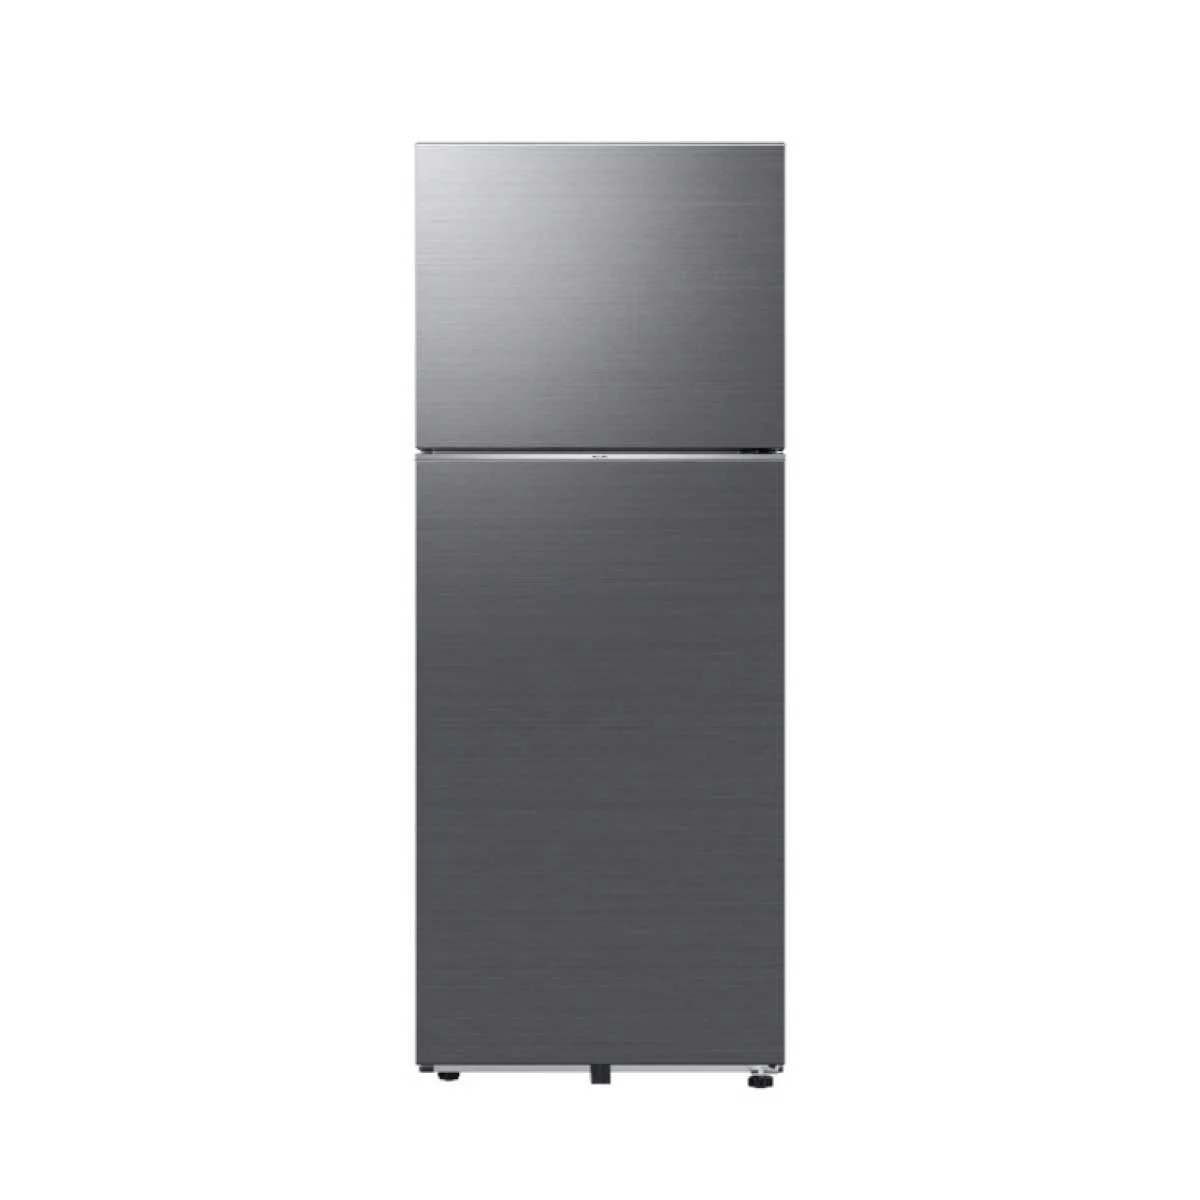 ตู้เย็น 2 ประตู SAMSUNG รุ่น RT38CG6020S9ST ขนาด 13.9 คิว รับประกันสินค้า 5 ปี คอมเพรสเชอร์ 20 ปี